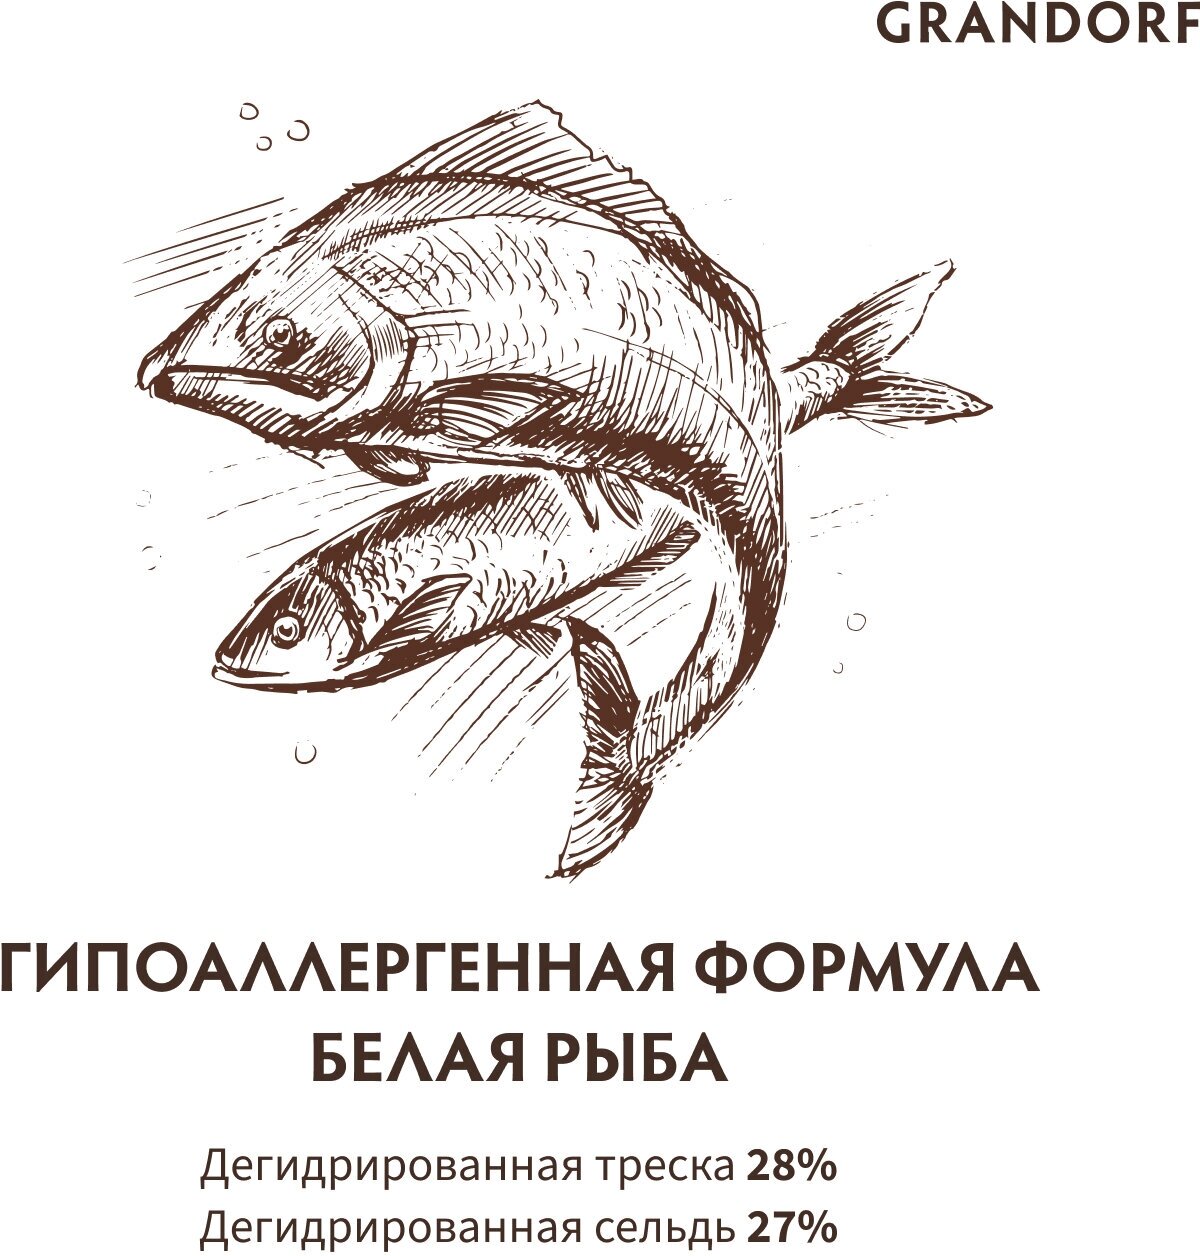 Grandorf White Fish корм для взрослых собак средних и крупных пород (Белая рыба, 1 кг.) - фото №2